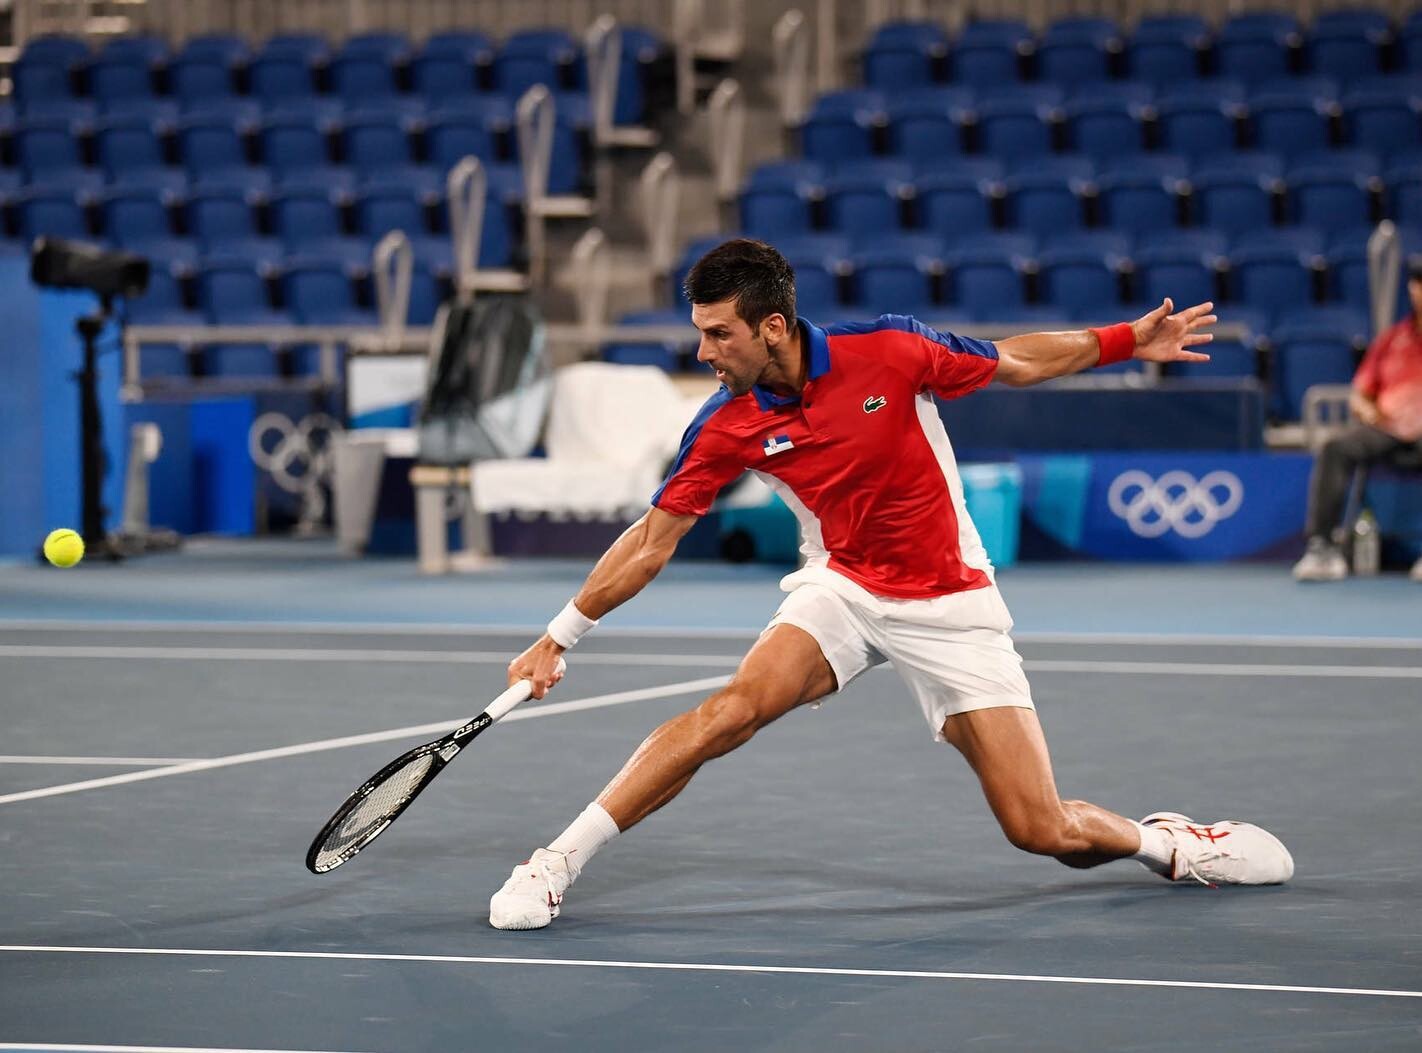 2022 júniusa van, és még mindig az a kérdés, hogy teniszezhet-e Djokovic oltás nélkül Amerikában